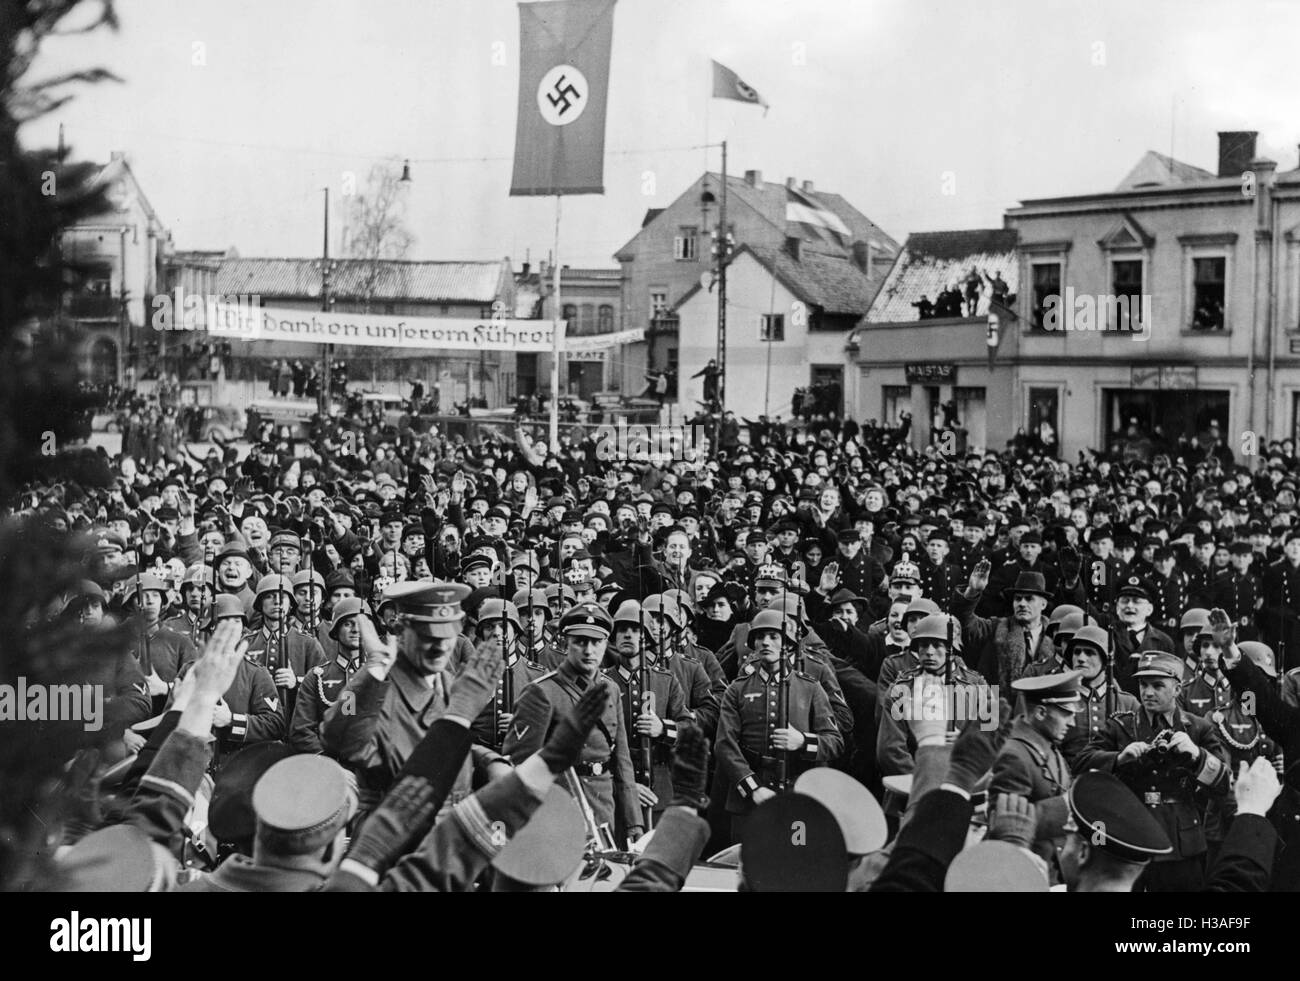 Adolf Hitler in Memel, 1939 Stock Photo - Alamy